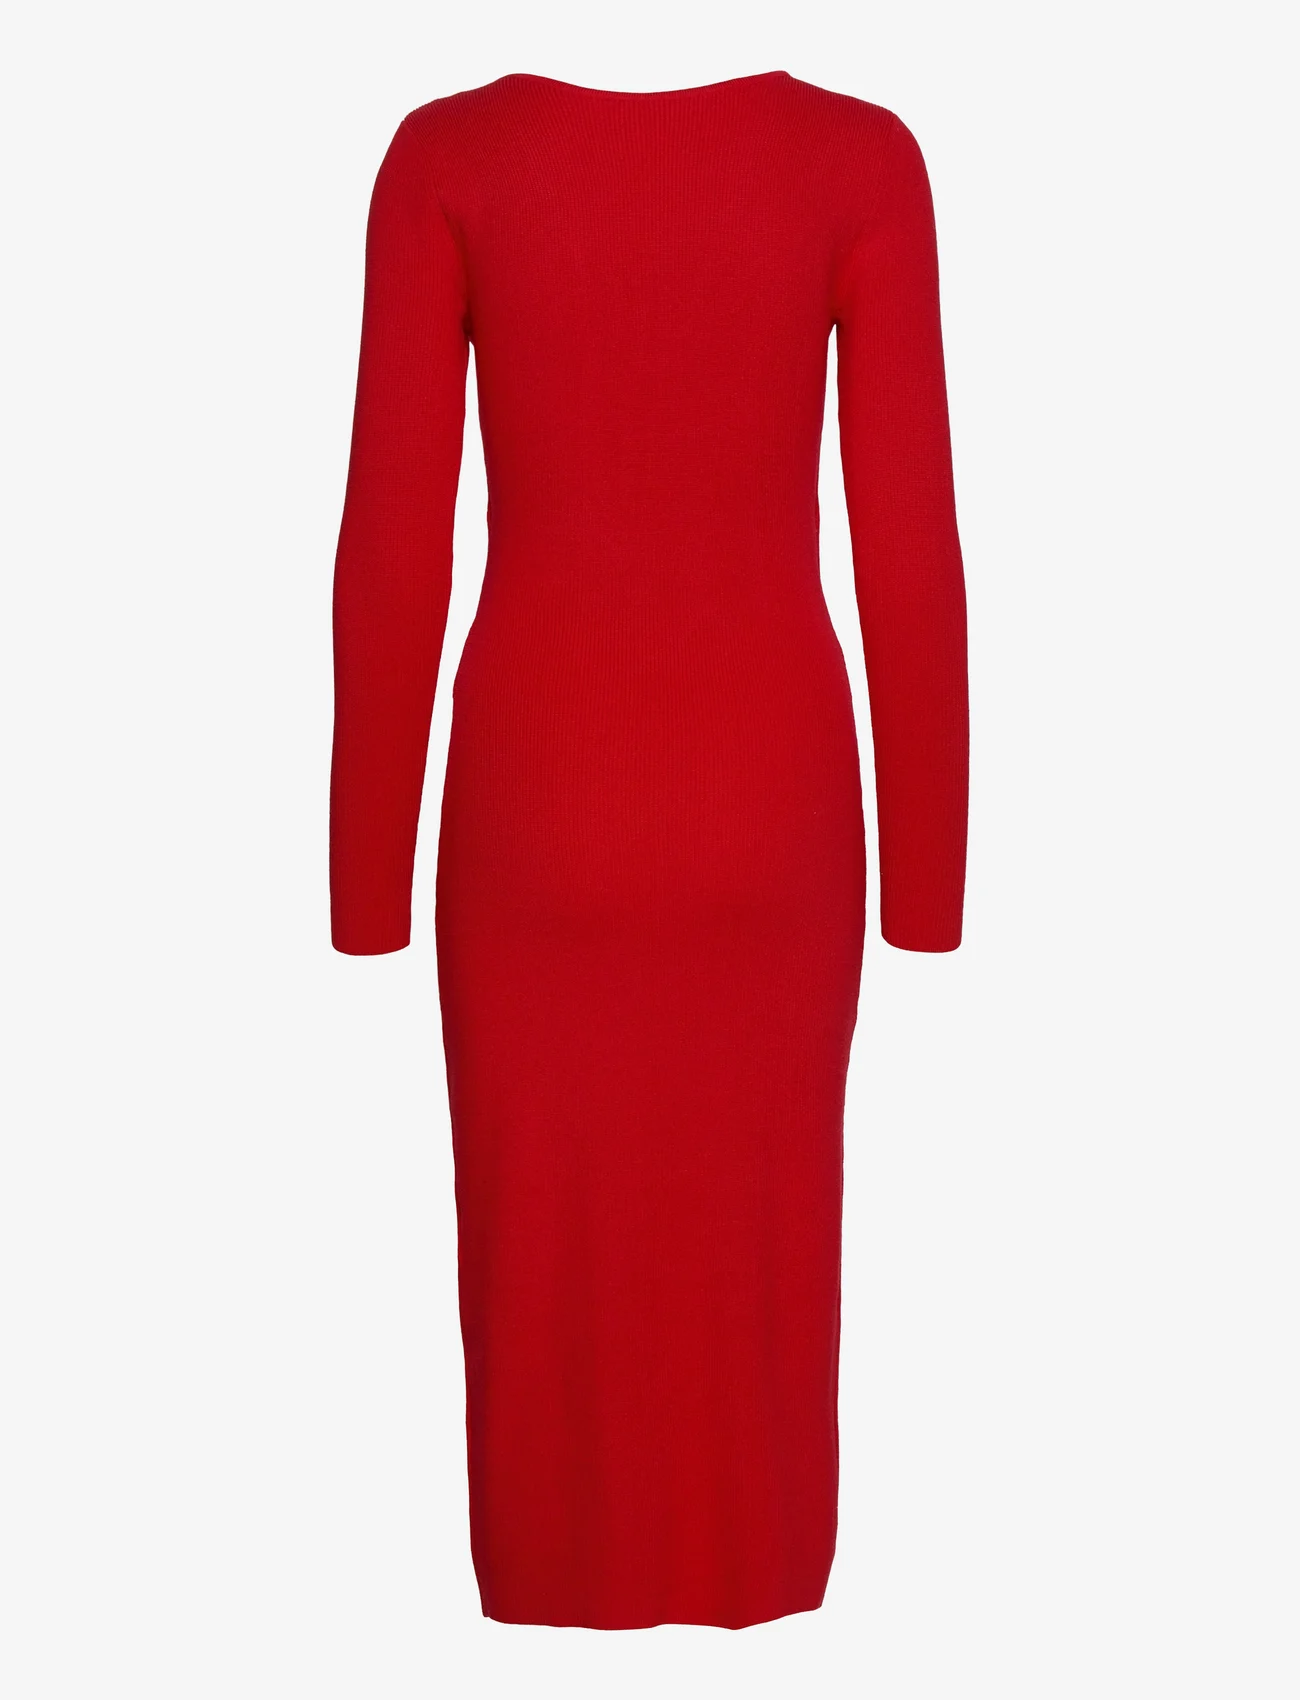 bzr - Lela Jenner dress - etuikleider - fiery red - 1